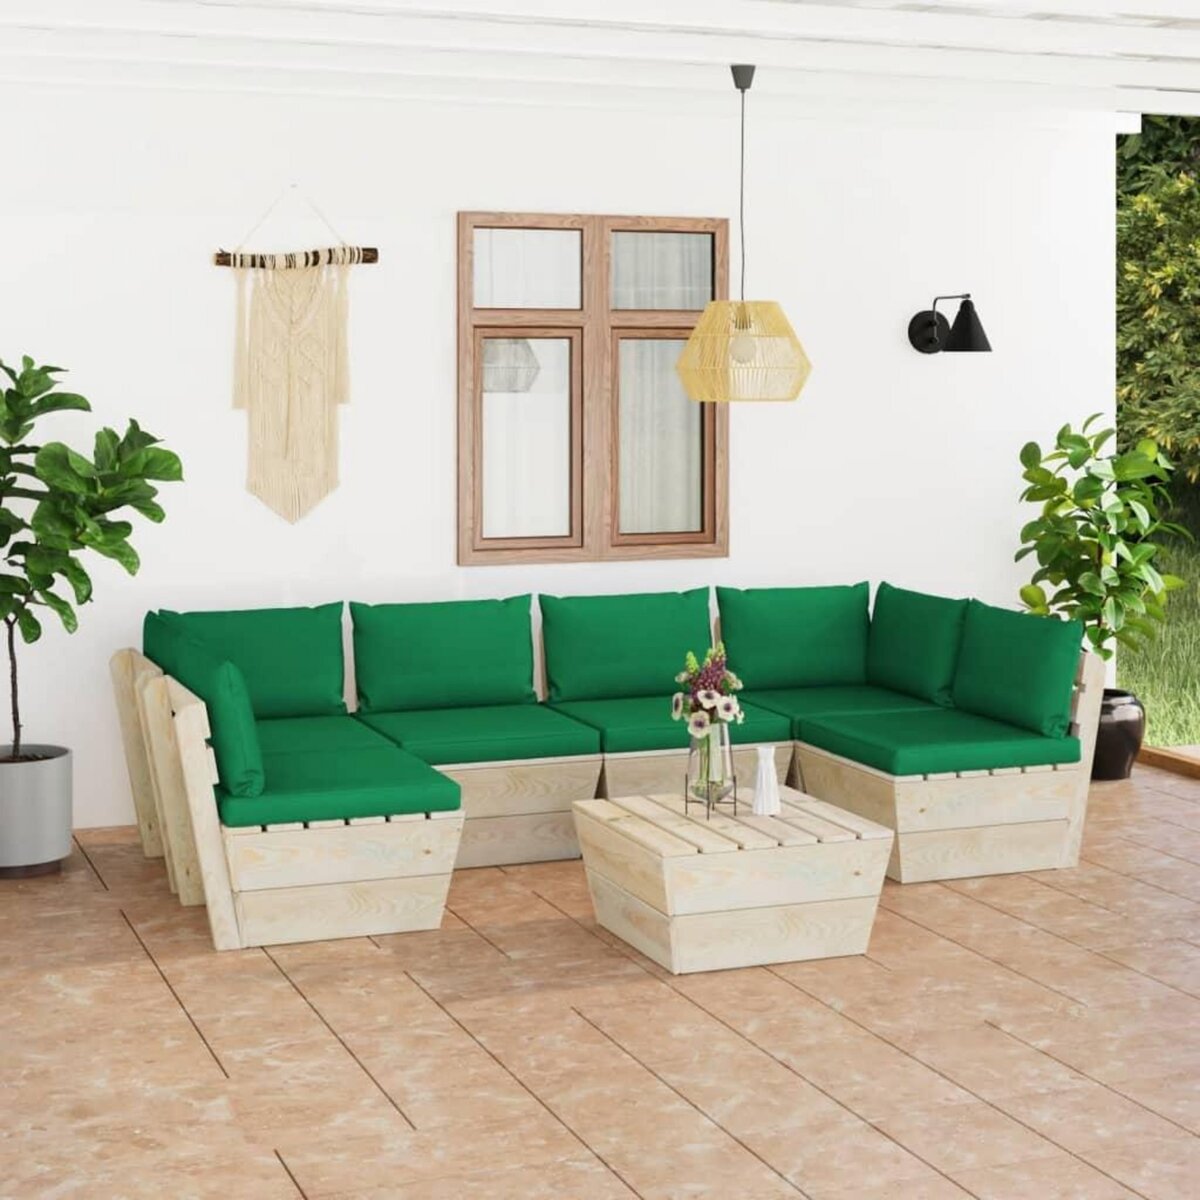 VIDAXL Salon de jardin palette 7 pcs avec coussins Epicea impregne